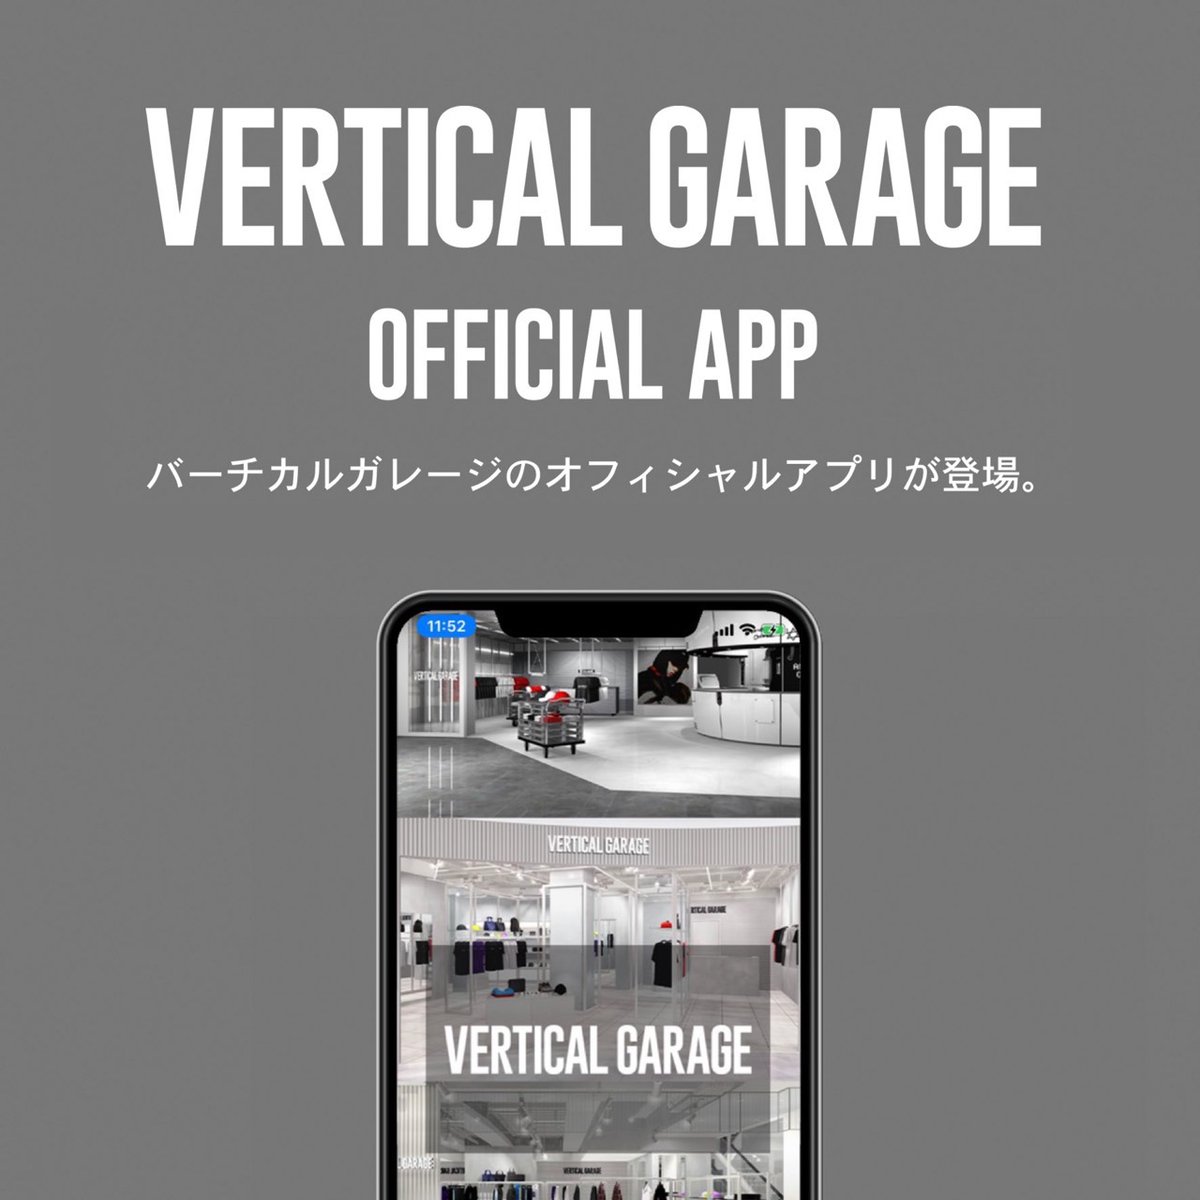 24karats على تويتر Vertical Garage Application お買い物がお得になるポイント機能付きvertical Garage公式アプリがリリースされました ダウンロードしていただくとアプリ限定のオリジナル壁紙 オリジナルフォトフレームをプレゼント ダウンロードはこちら